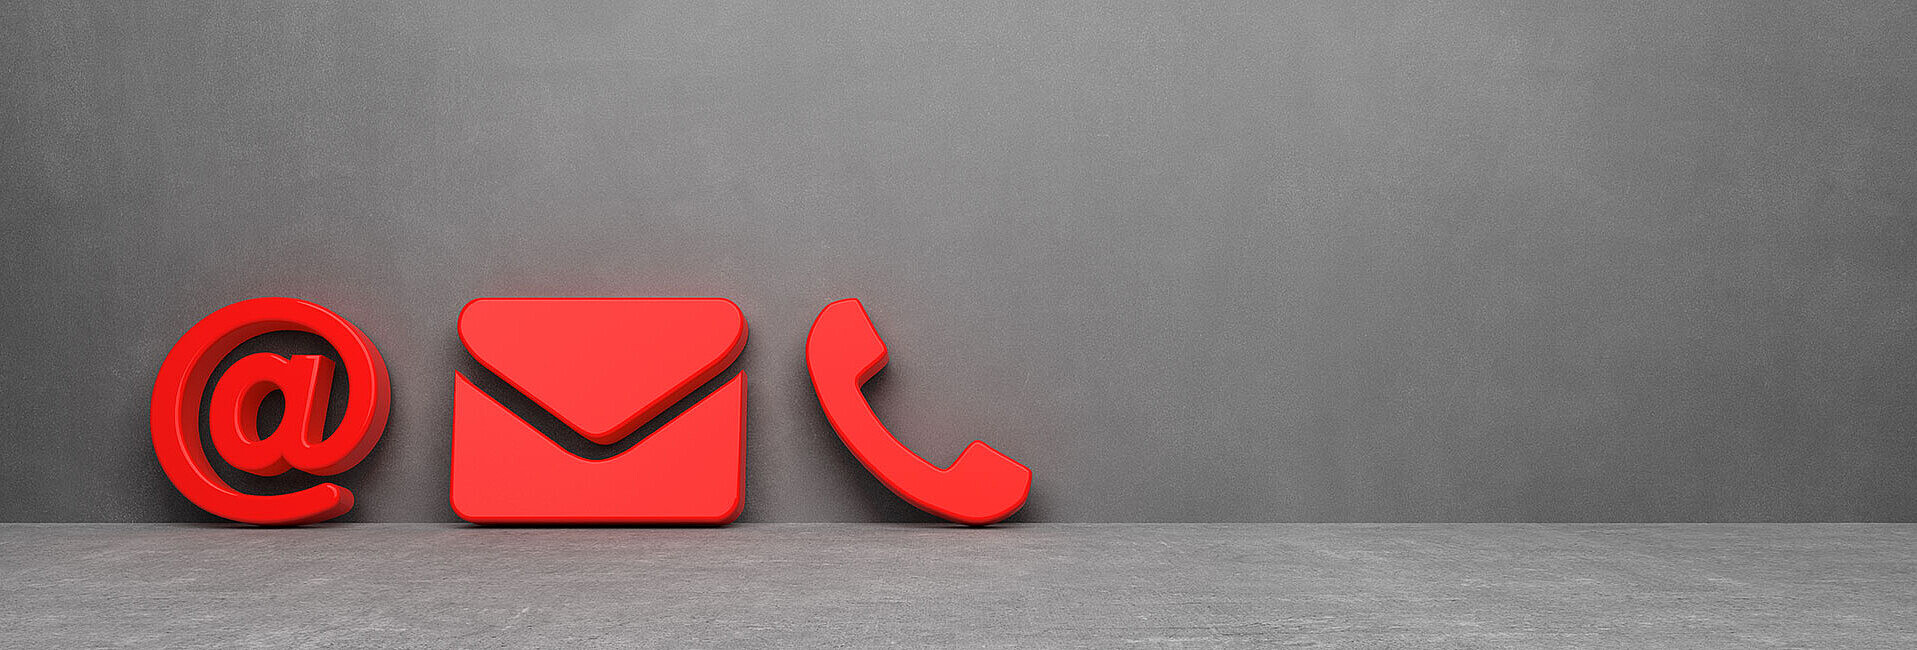 Ein rotes @-Zeichen, ein Briefumschlag und ein Telefonhörer als Symbol vor einer grauen Wand